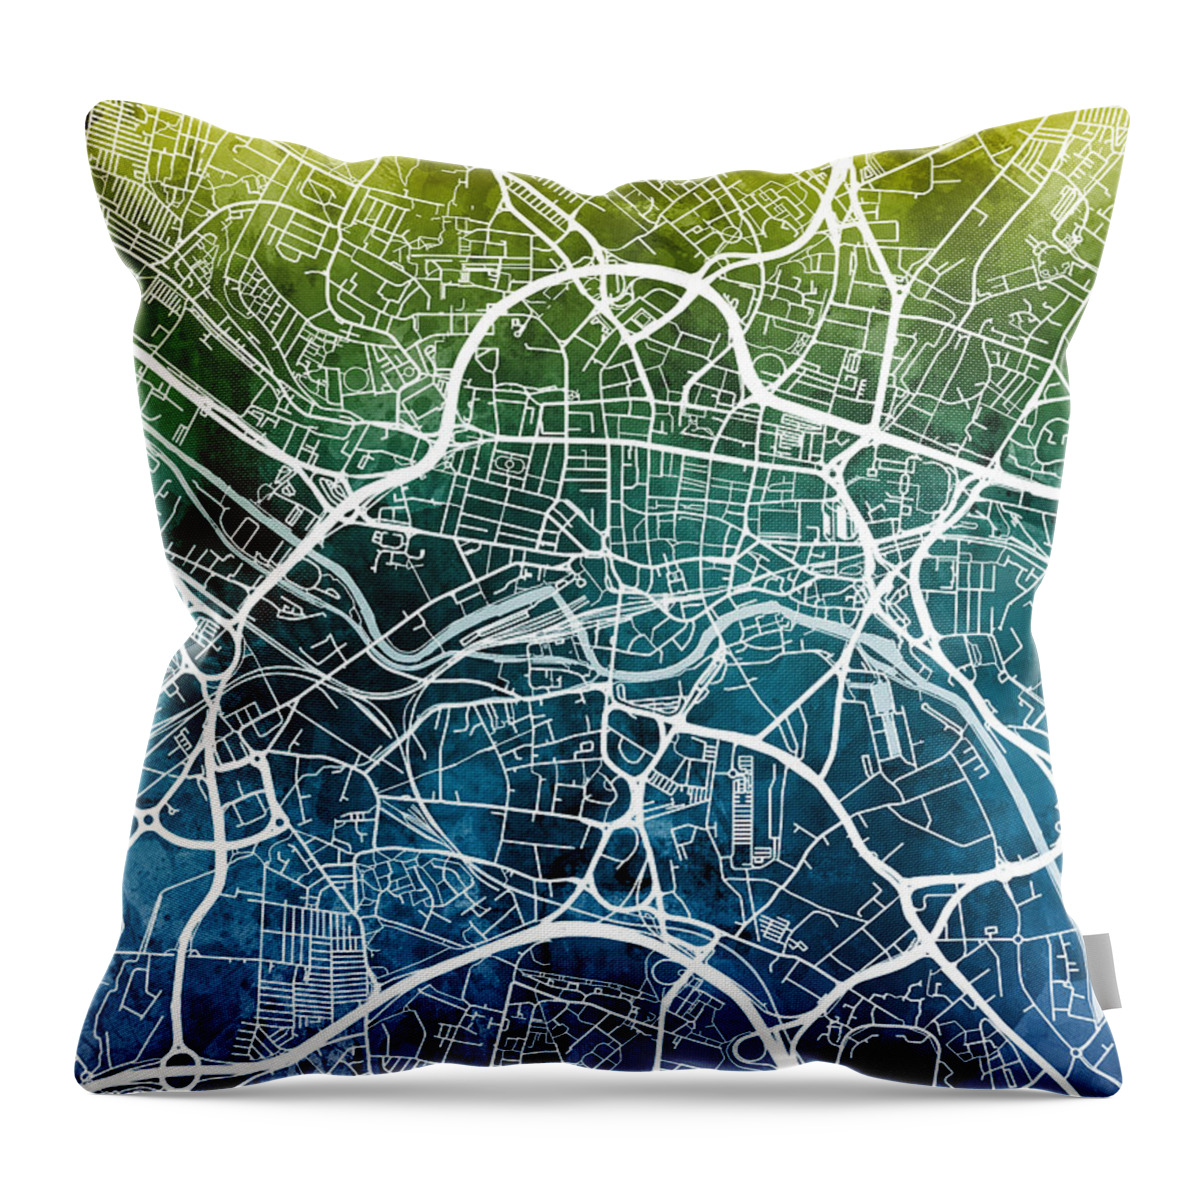 Leeds Throw Pillow featuring the digital art Leeds England Street Map #41 by Michael Tompsett